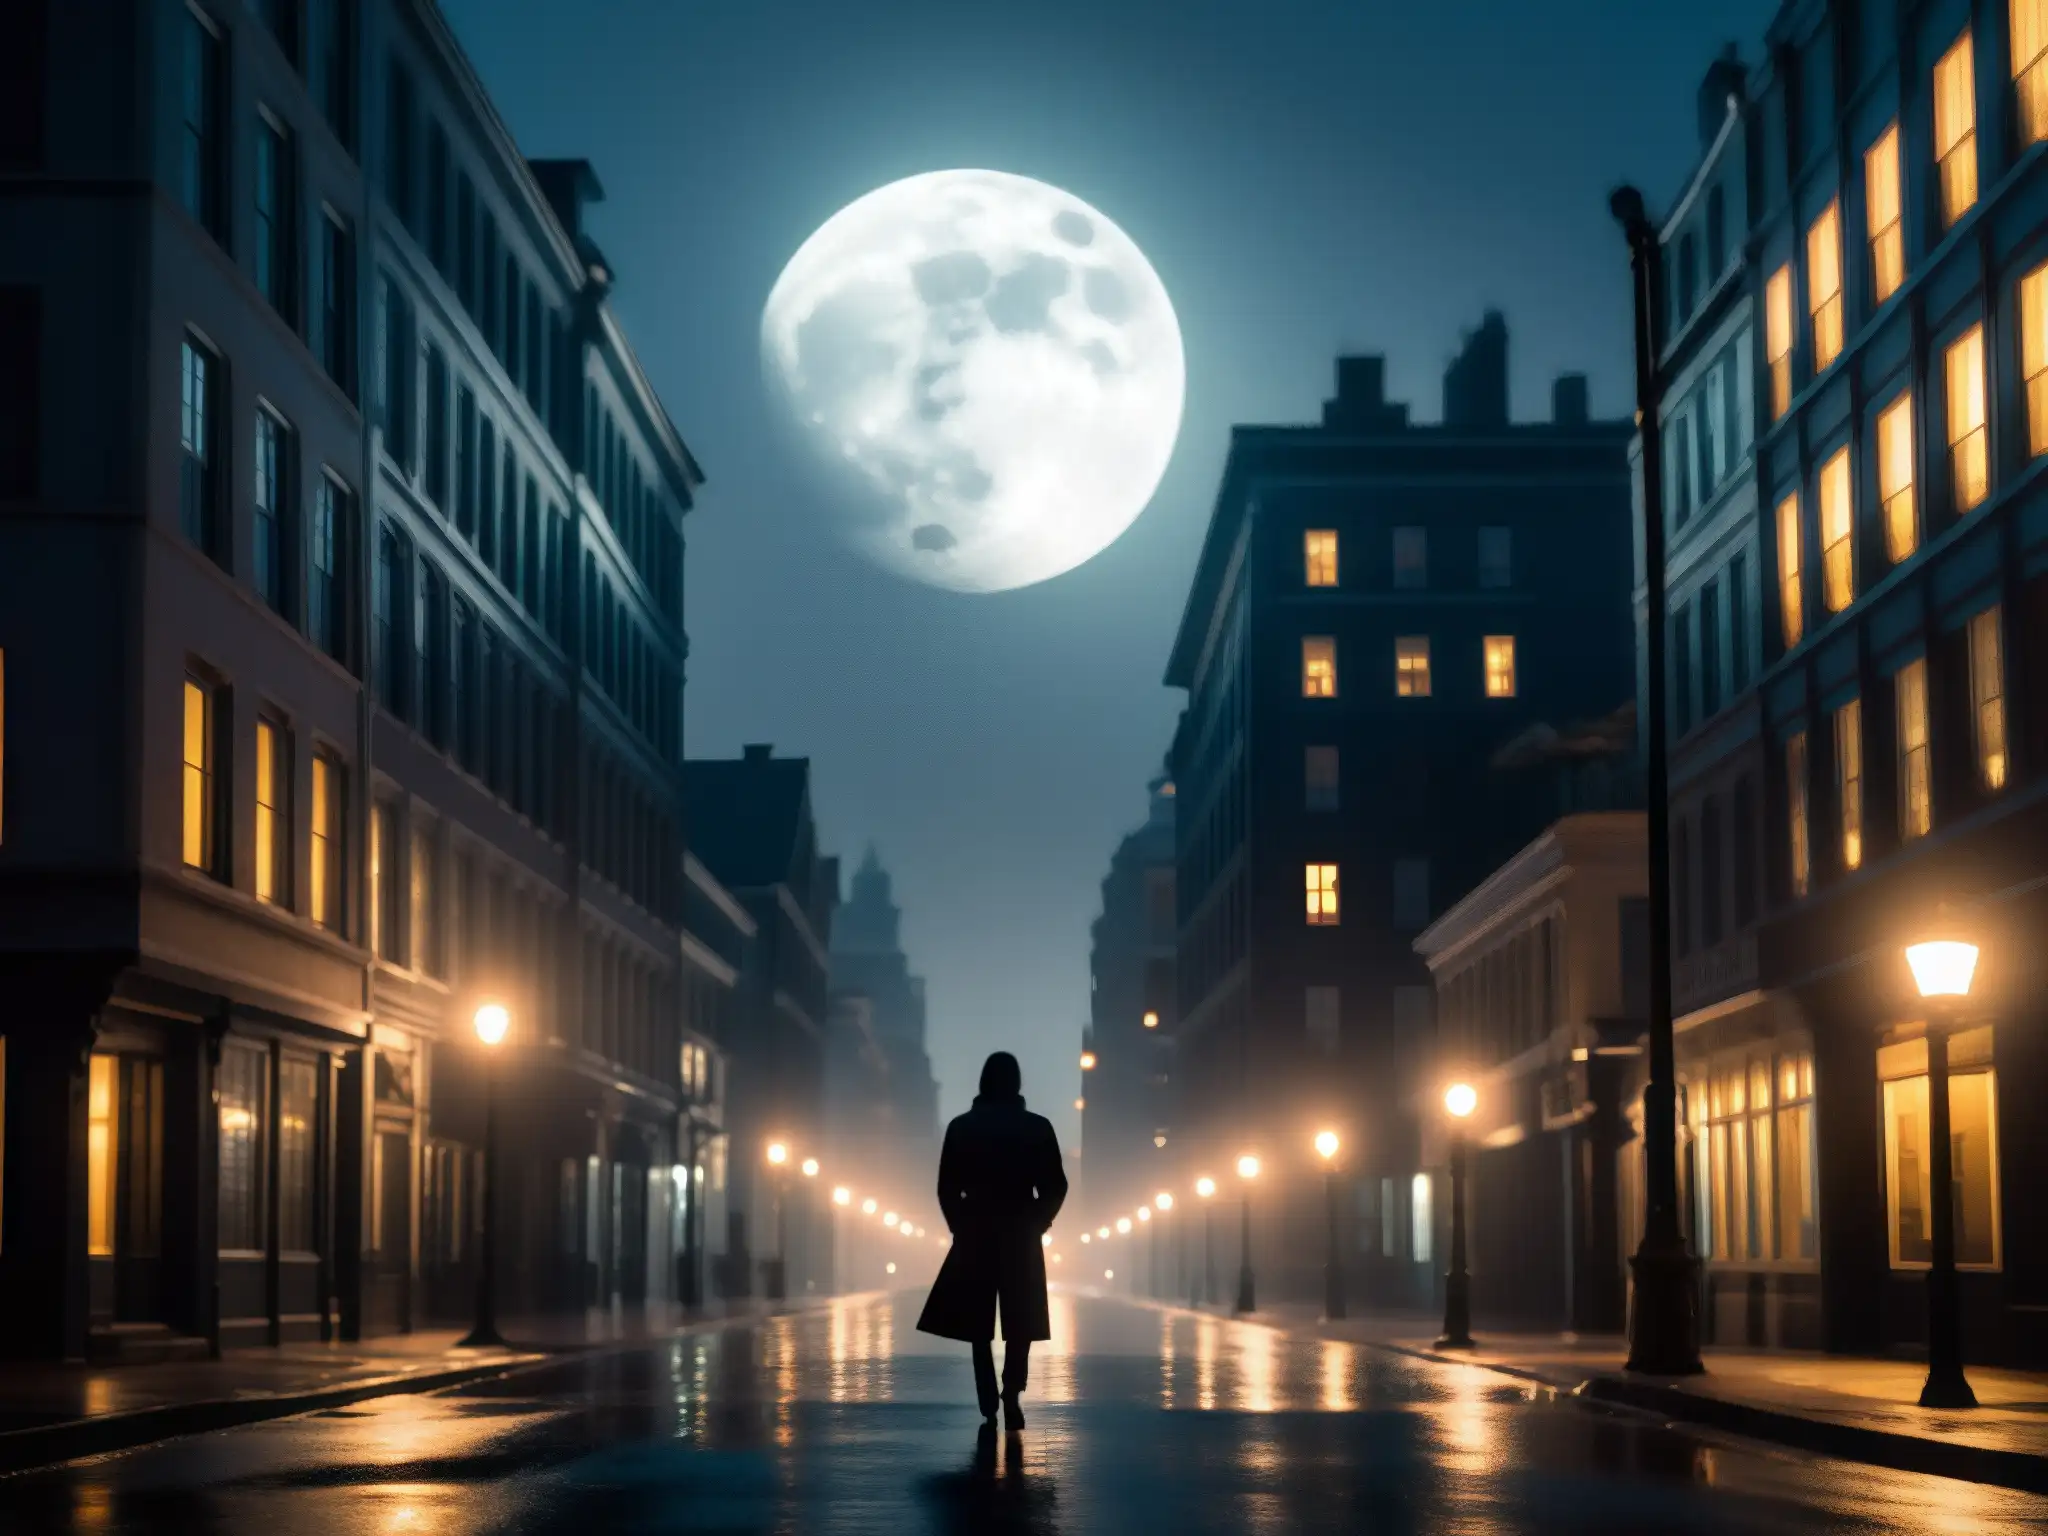 En una noche misteriosa, un figura se alza bajo la luz de la luna en una calle urbana